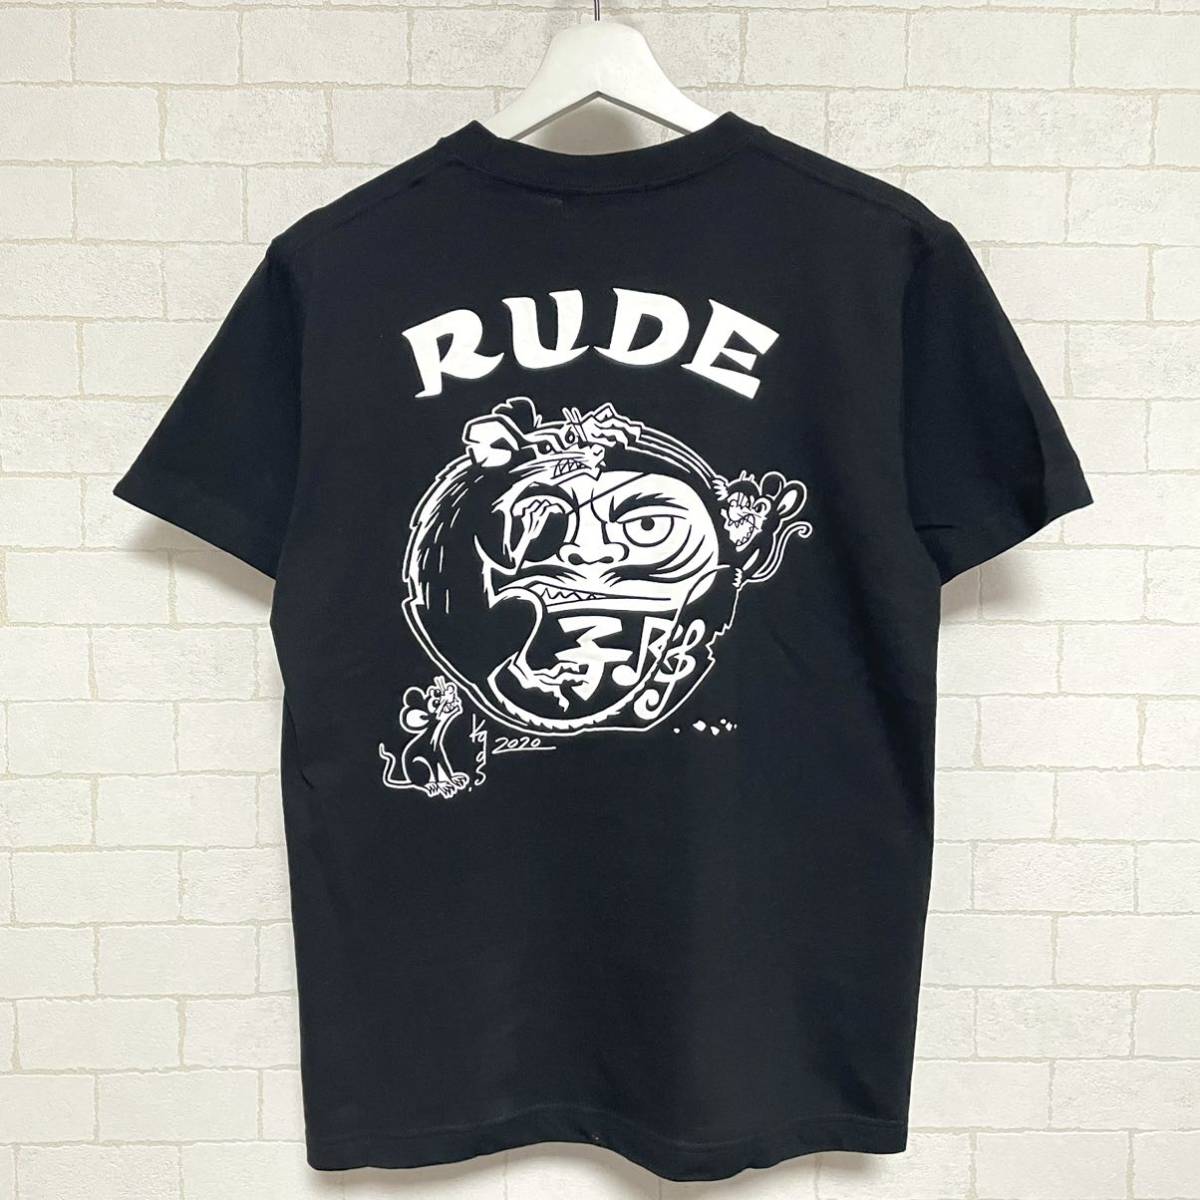 RUDE GALLERY ルードギャラリー 悪戯小僧TEE プリントTシャツ 2020